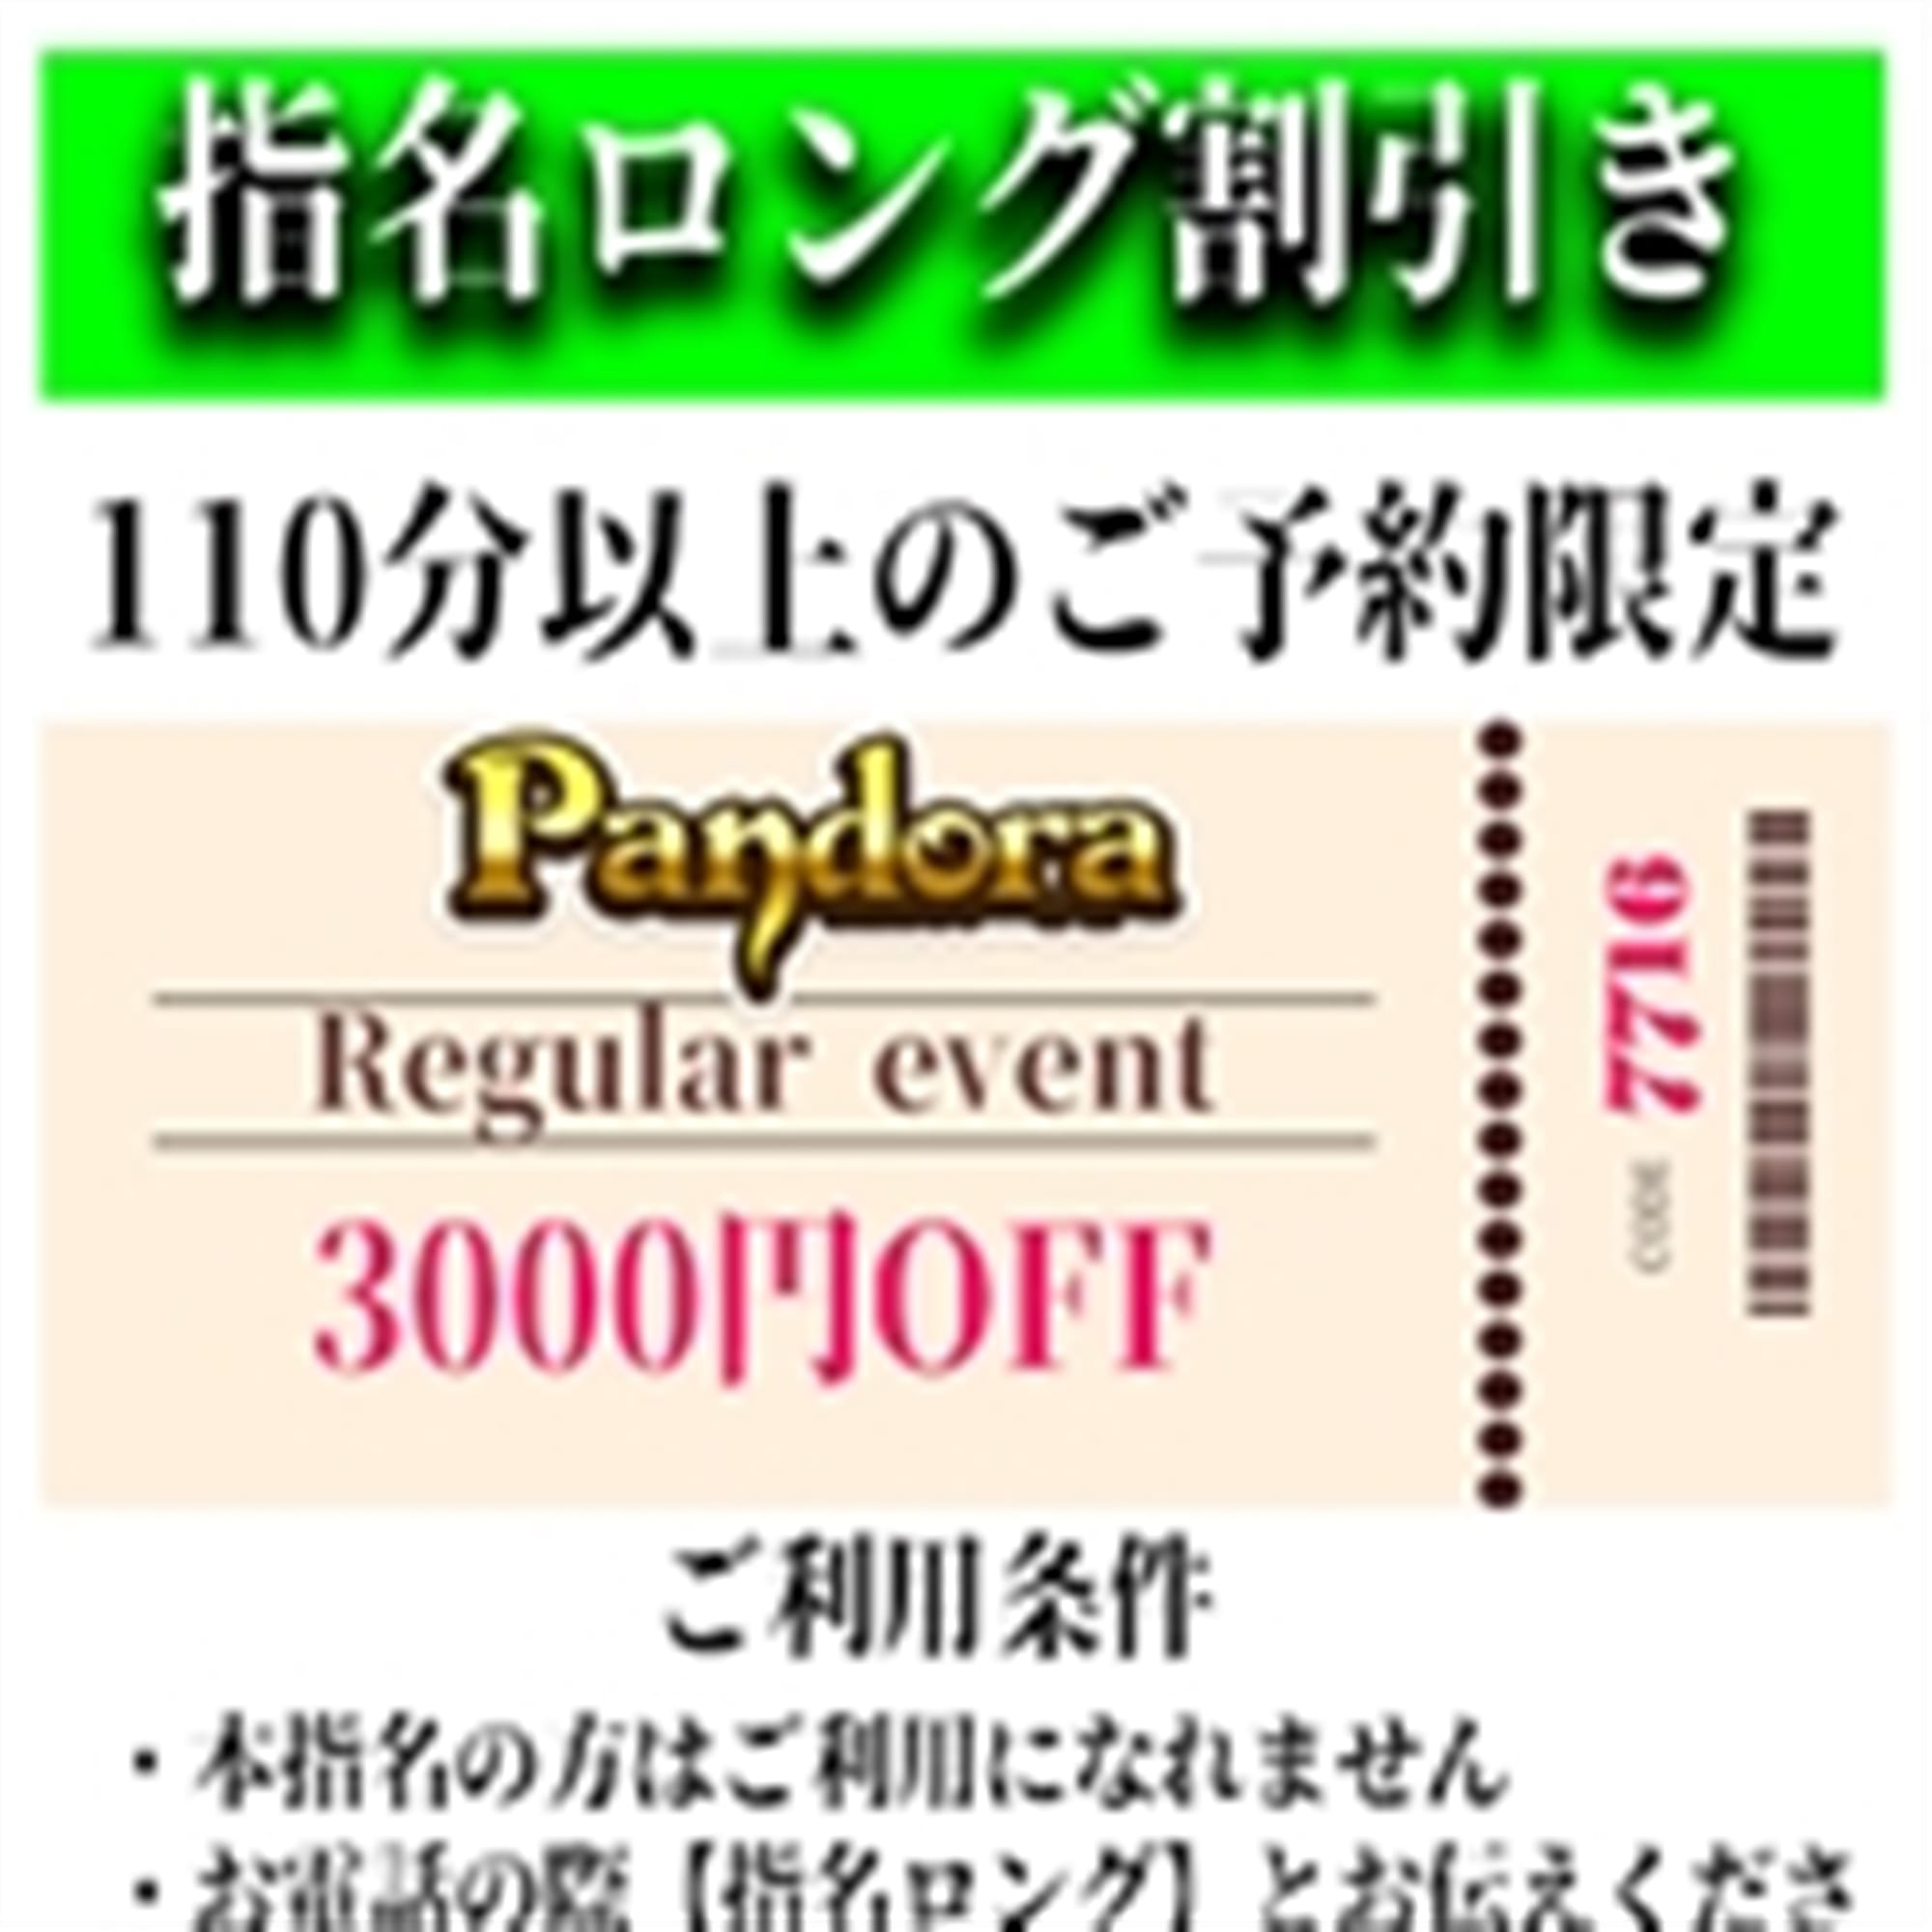 「ご指名のお客様も遊べるロングコース割引」04/26(金) 21:31 | Pandora(パンドラ)新潟のお得なニュース